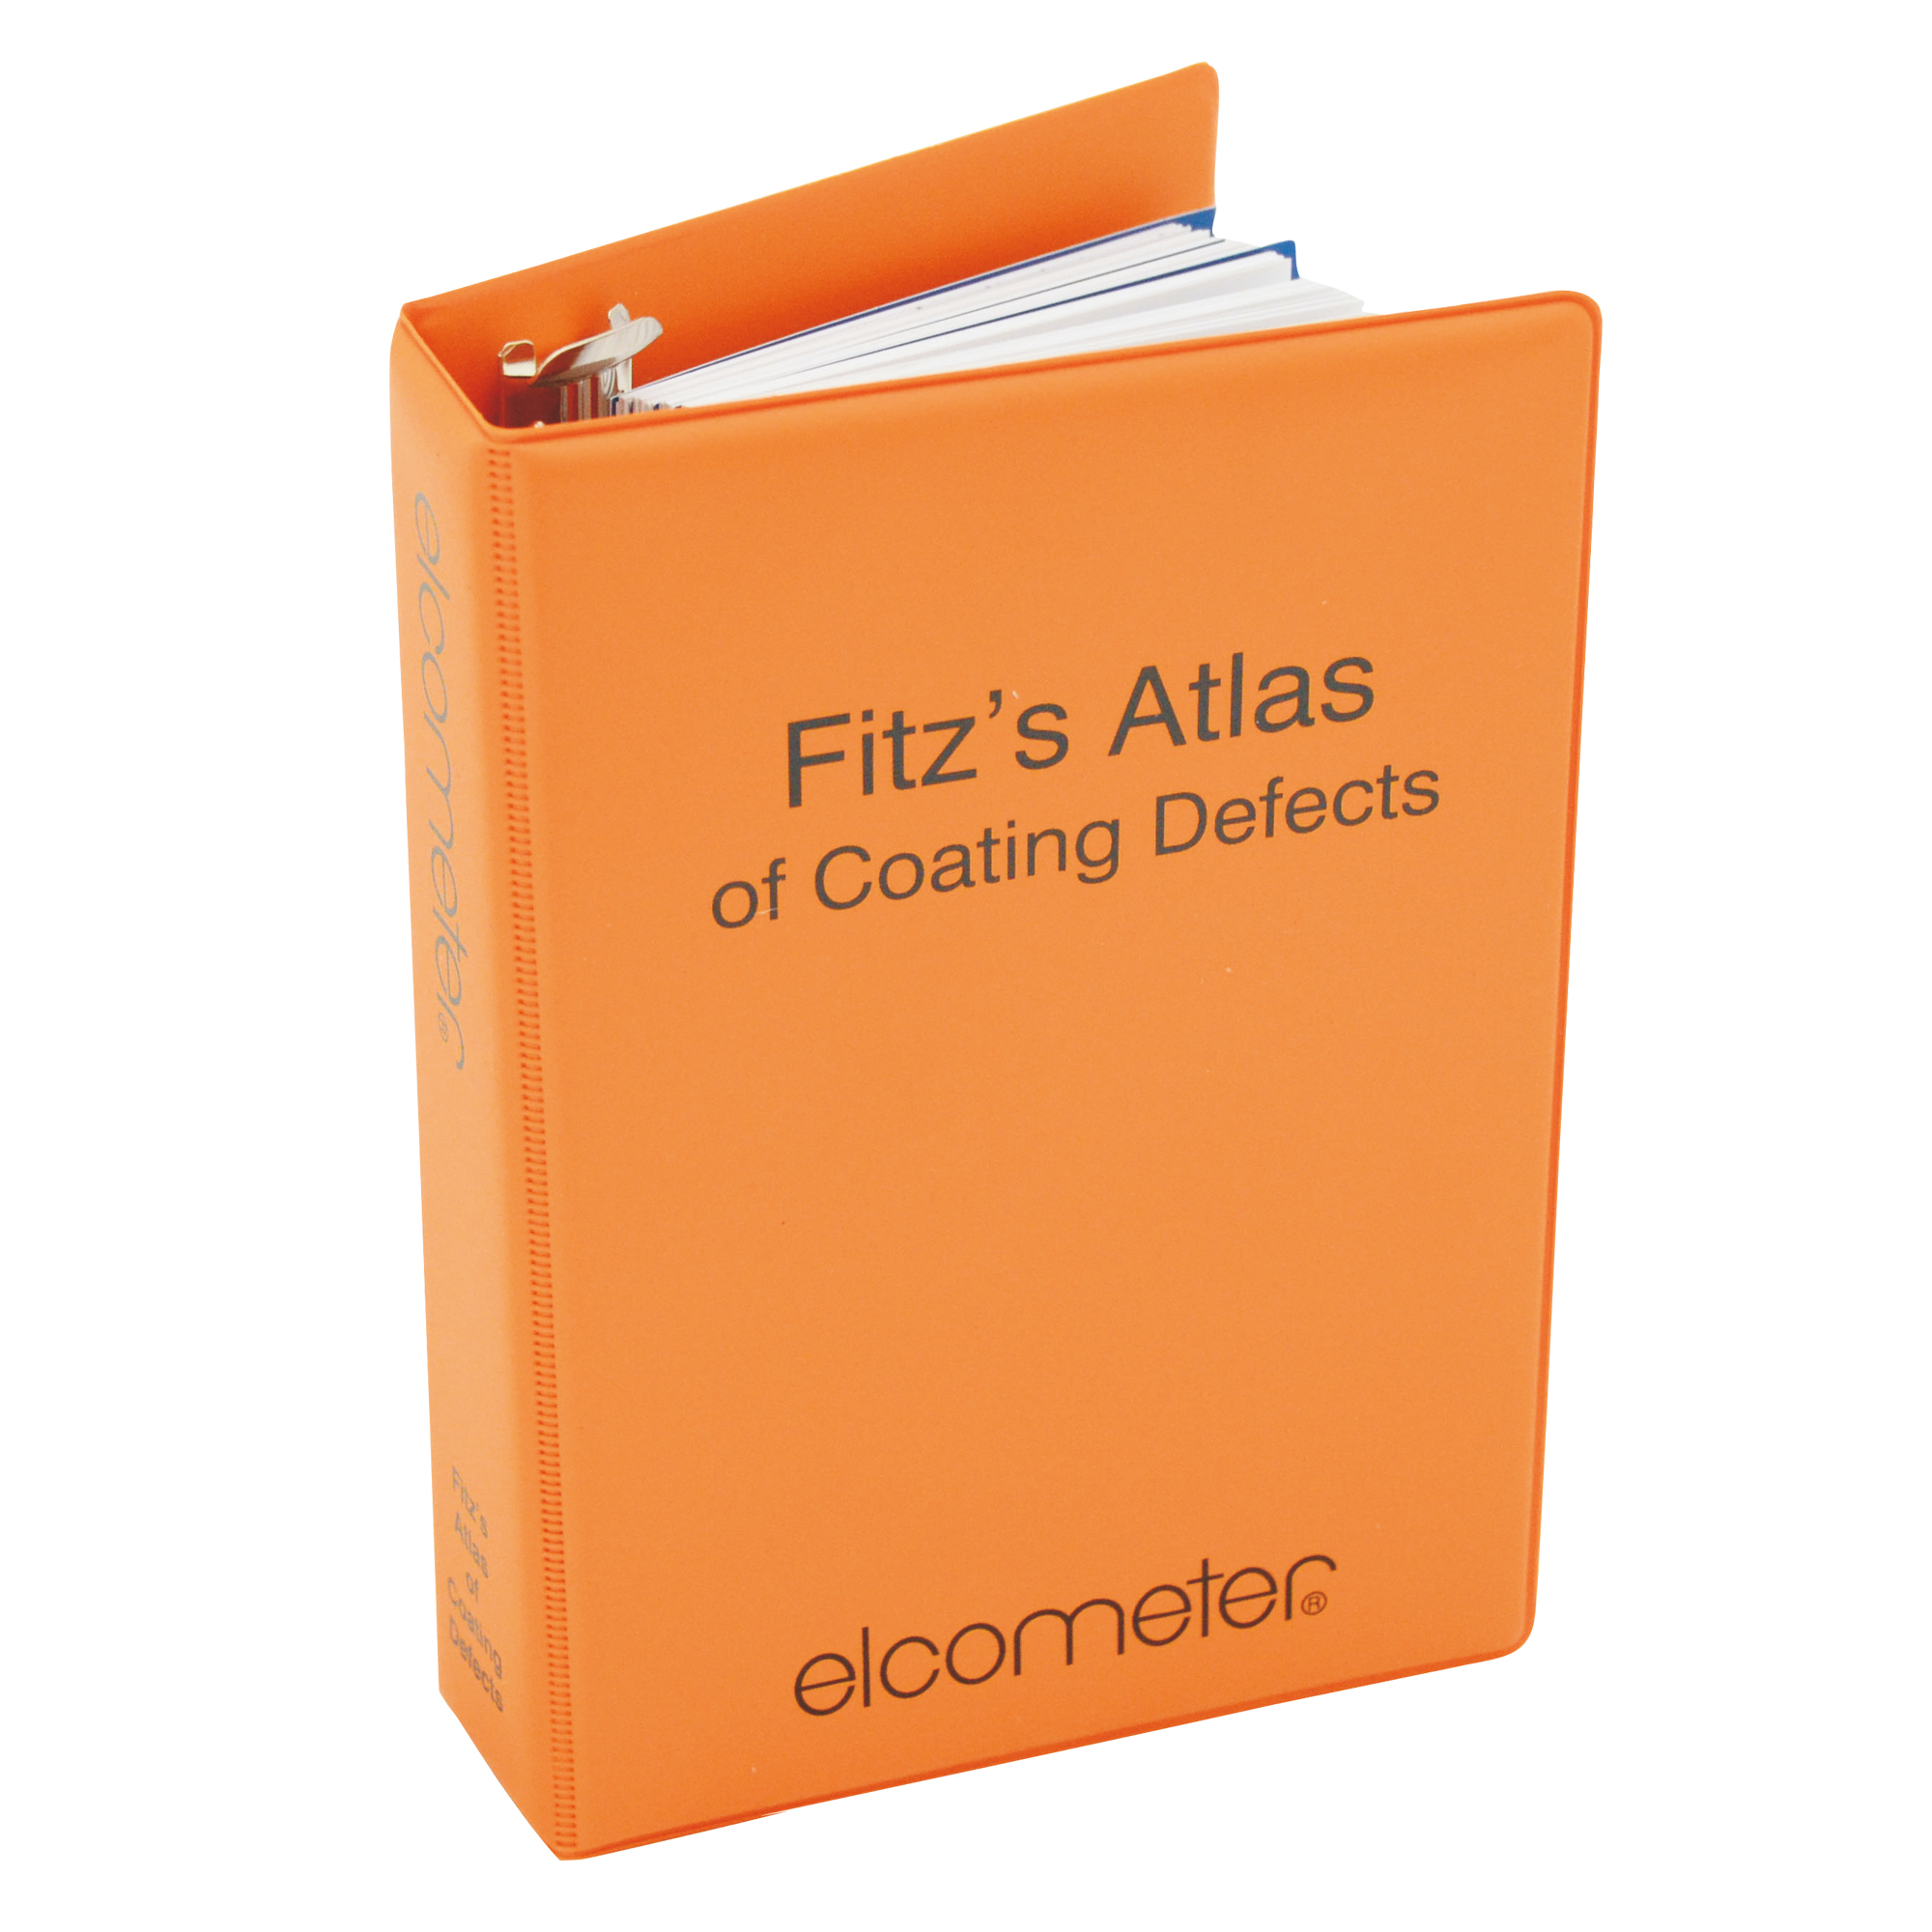 Elcometer Fitzs Atlas 2 of Coating Defects